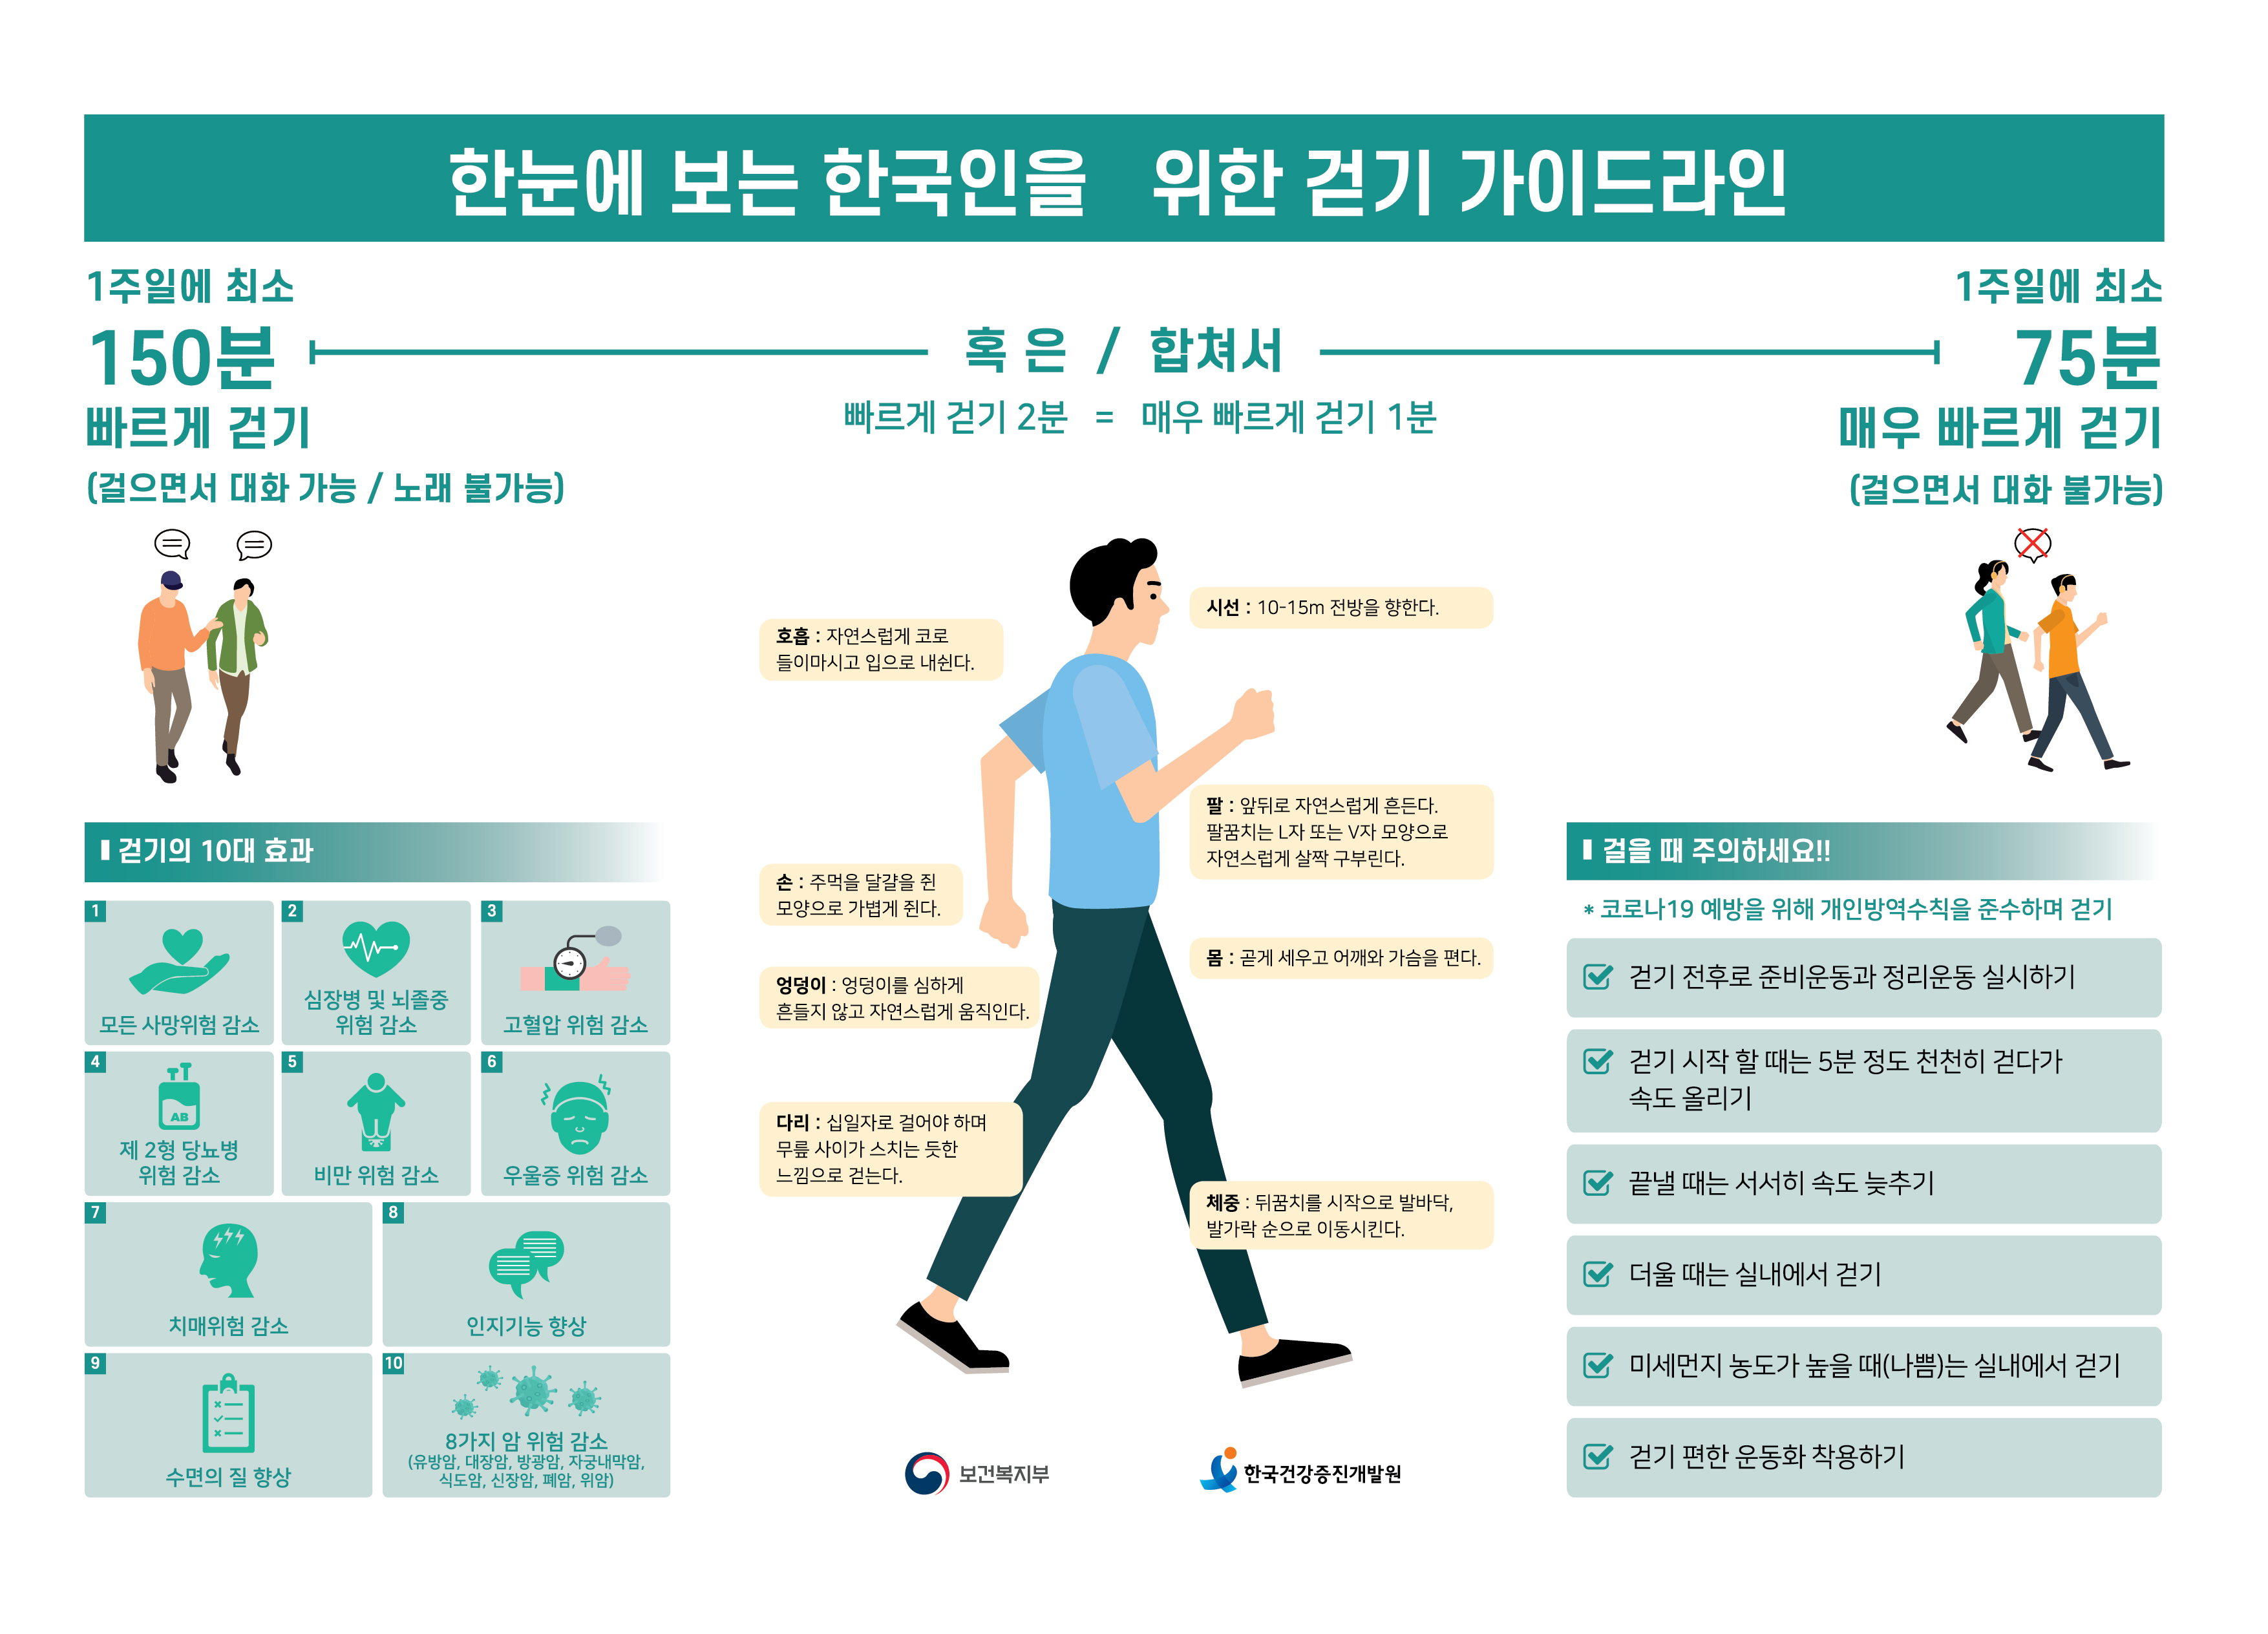 한눈에 보는 한국인을 위한 걷기 가이드라인